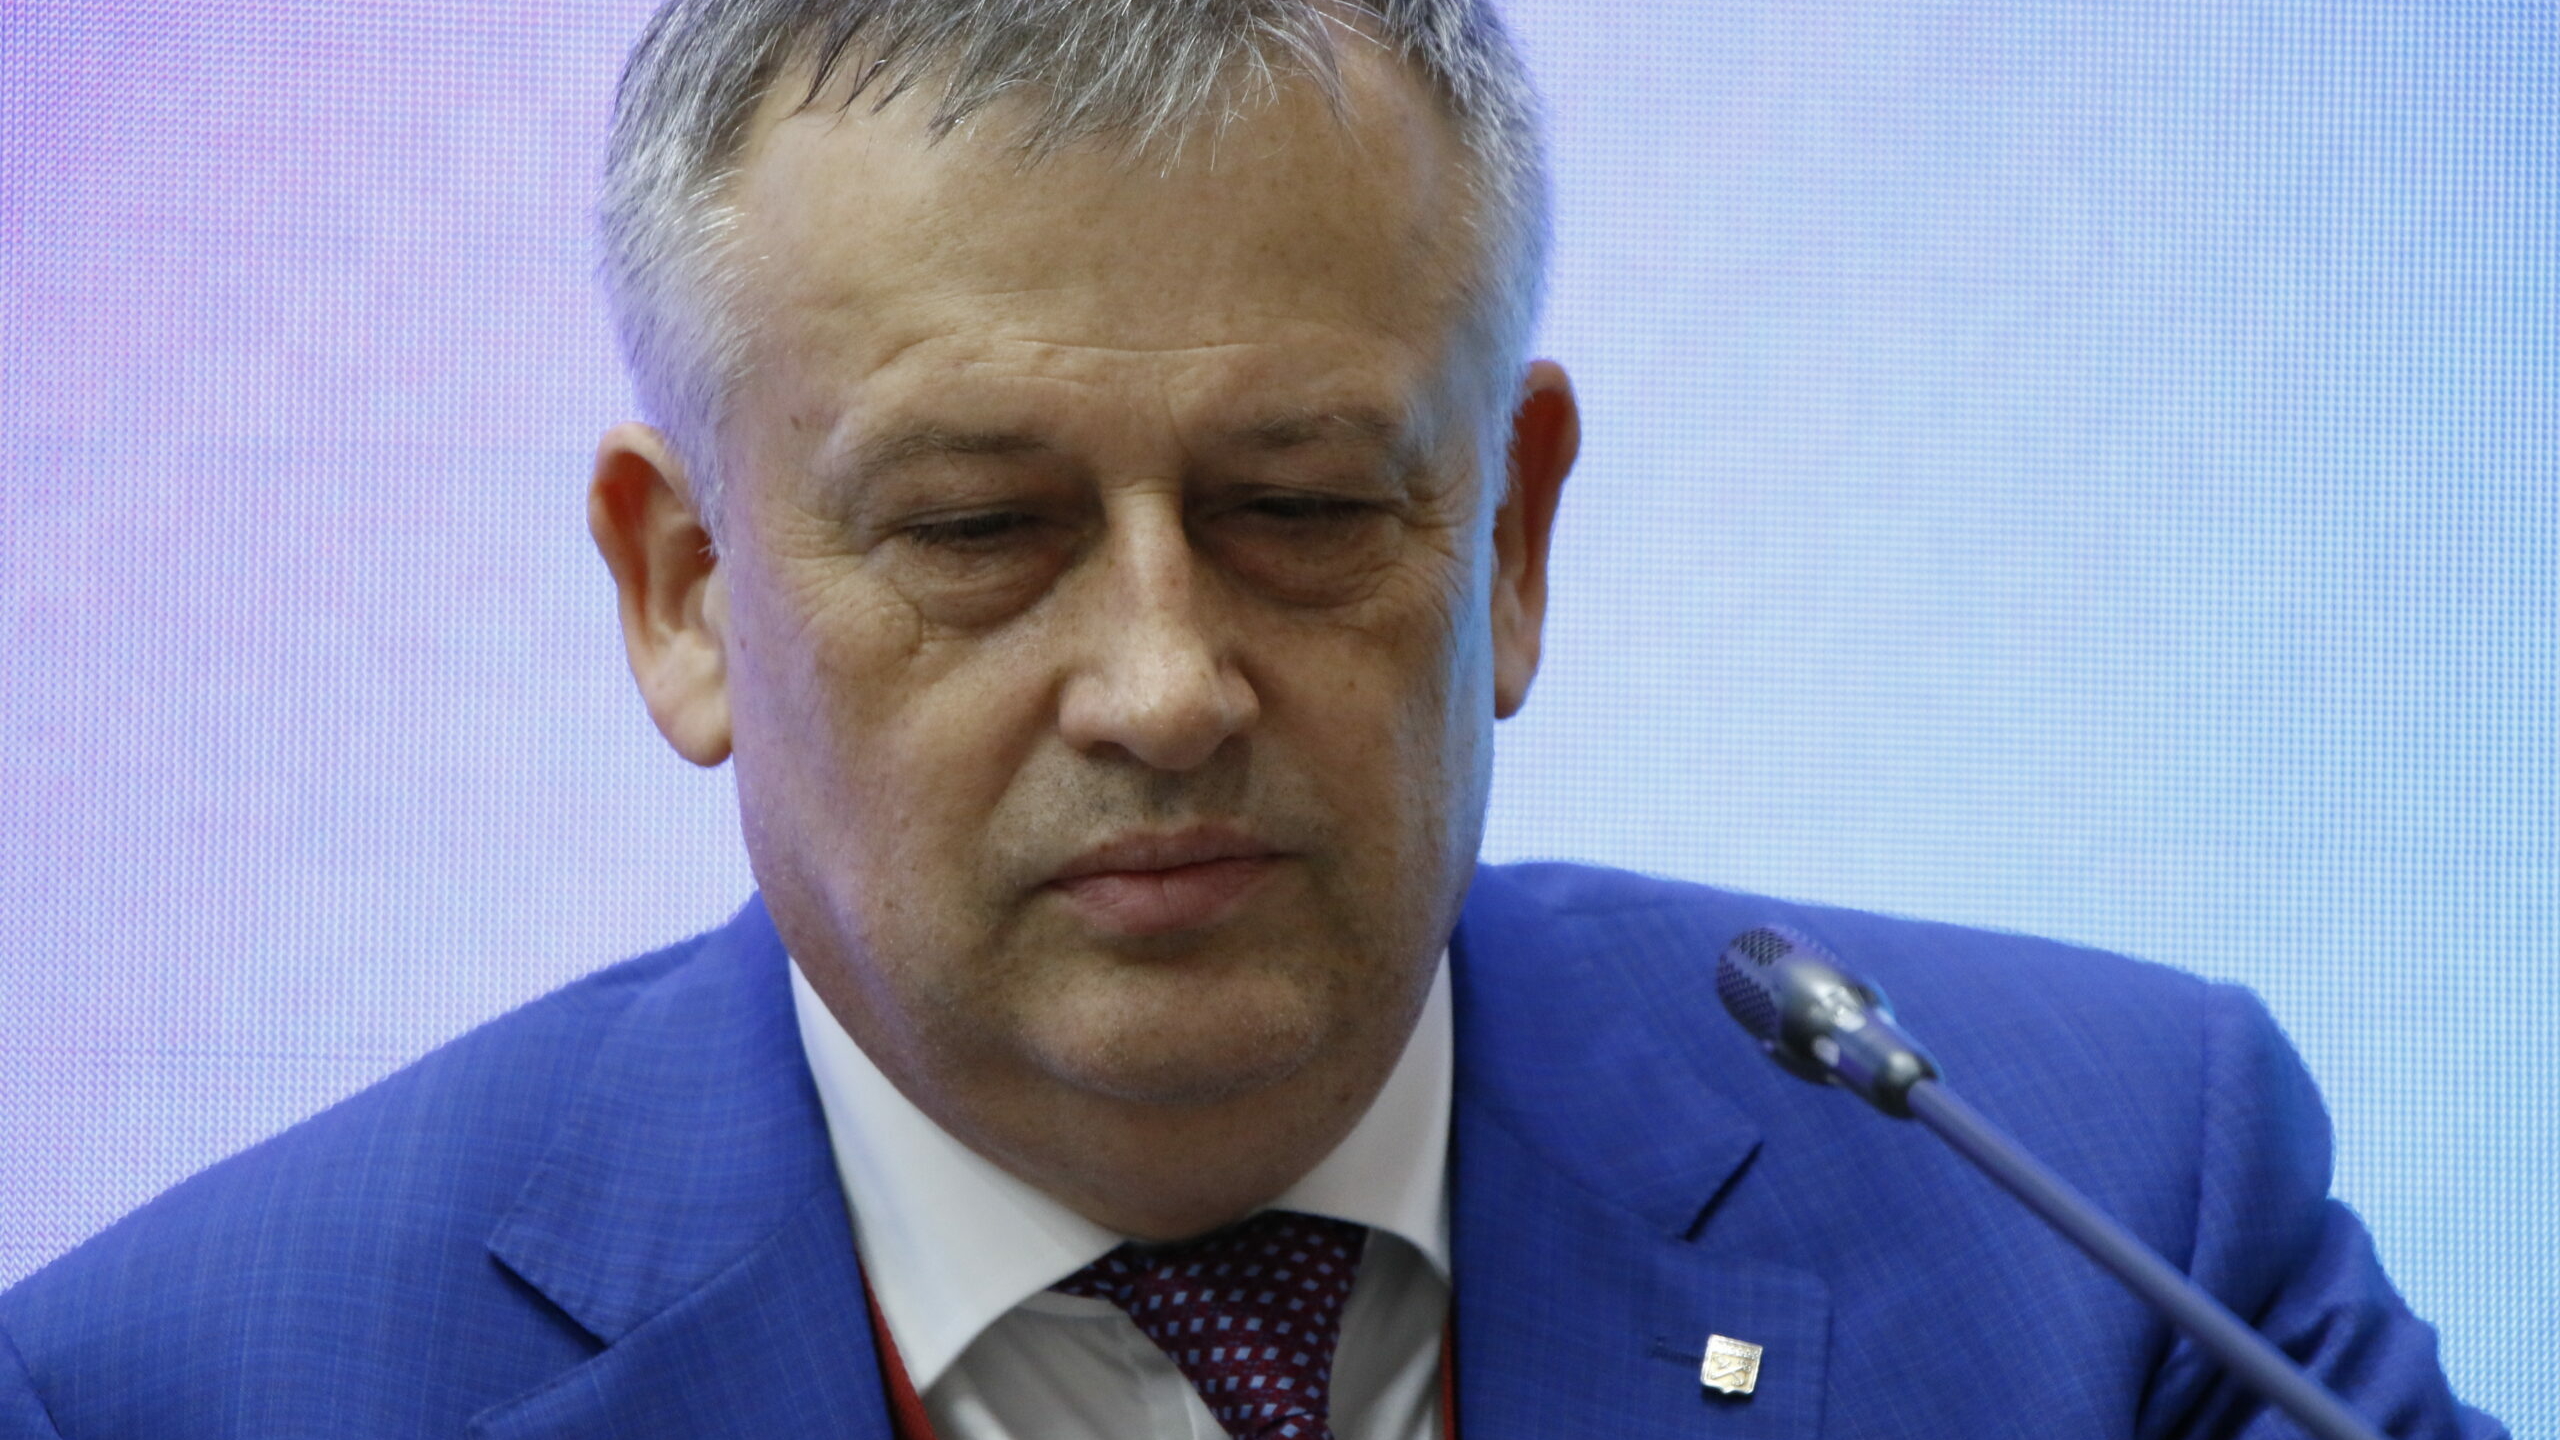 Губернатор Дрозденко рассказал, что в Ленобласти ситуация под контролем